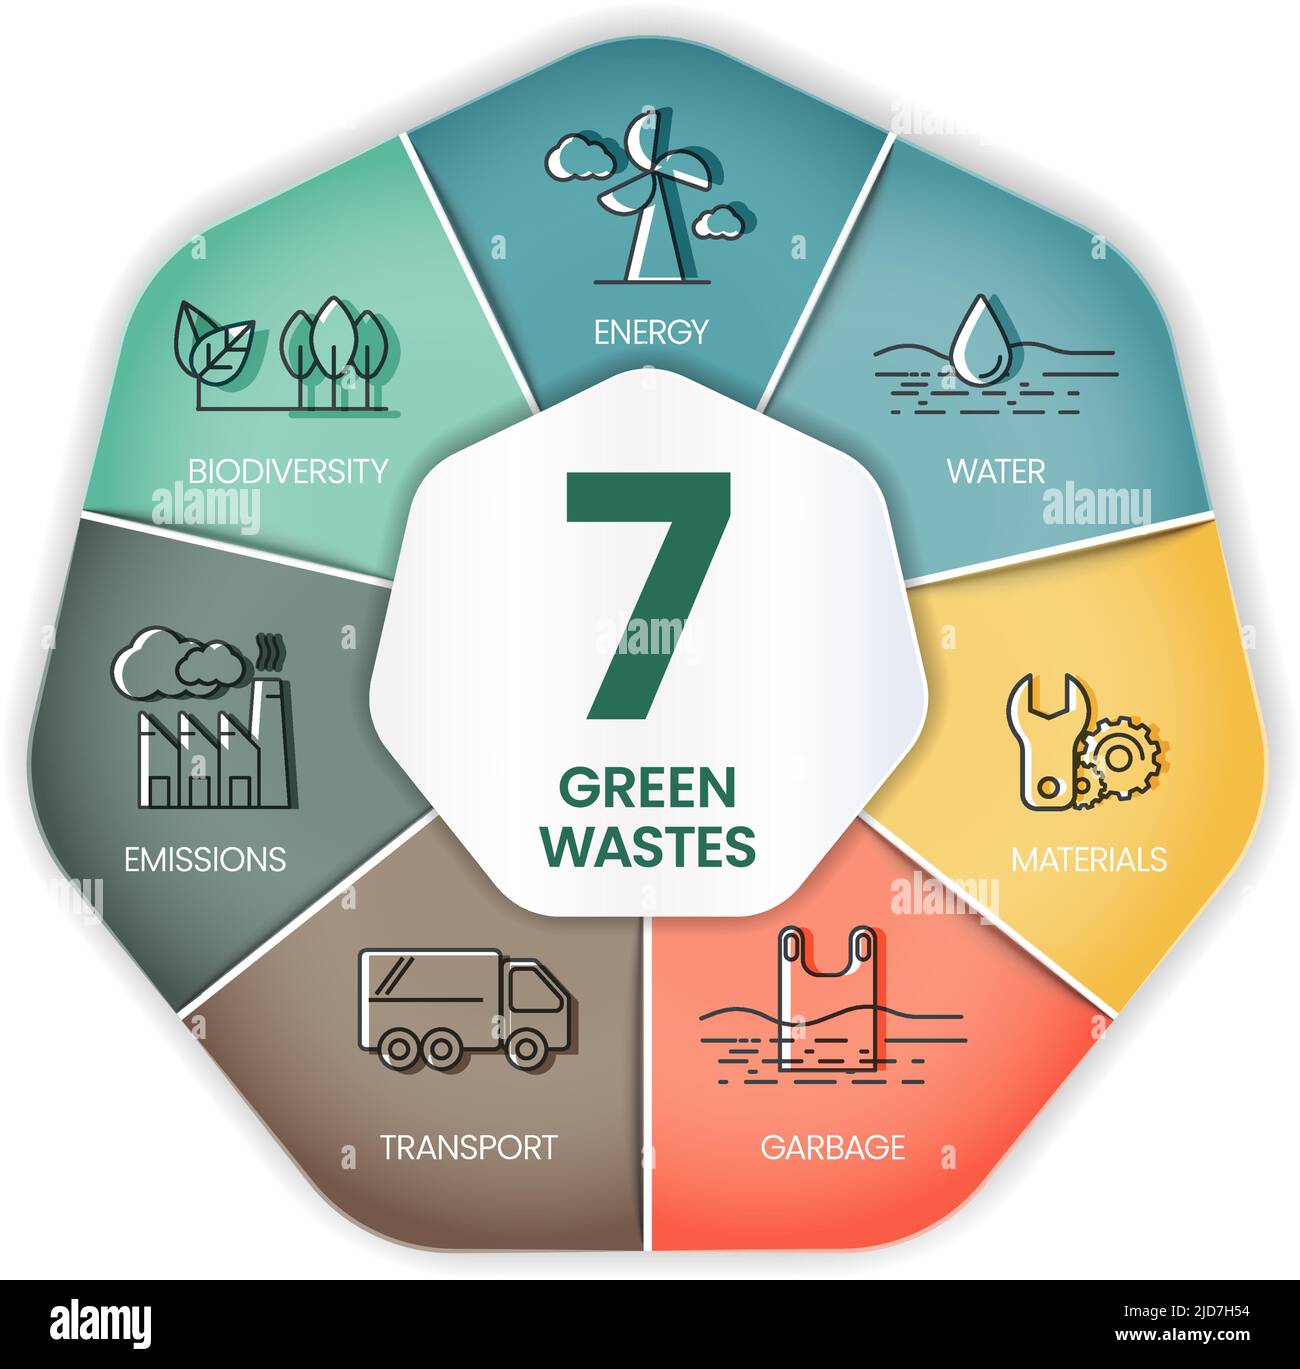 7 Green Waste Reduction Konzept hat viele Dimensionen, Transport, Müll, Material, Wasser, Biodiversität, Energie, Emissionen in CO2-Bilanz. Stock Vektor